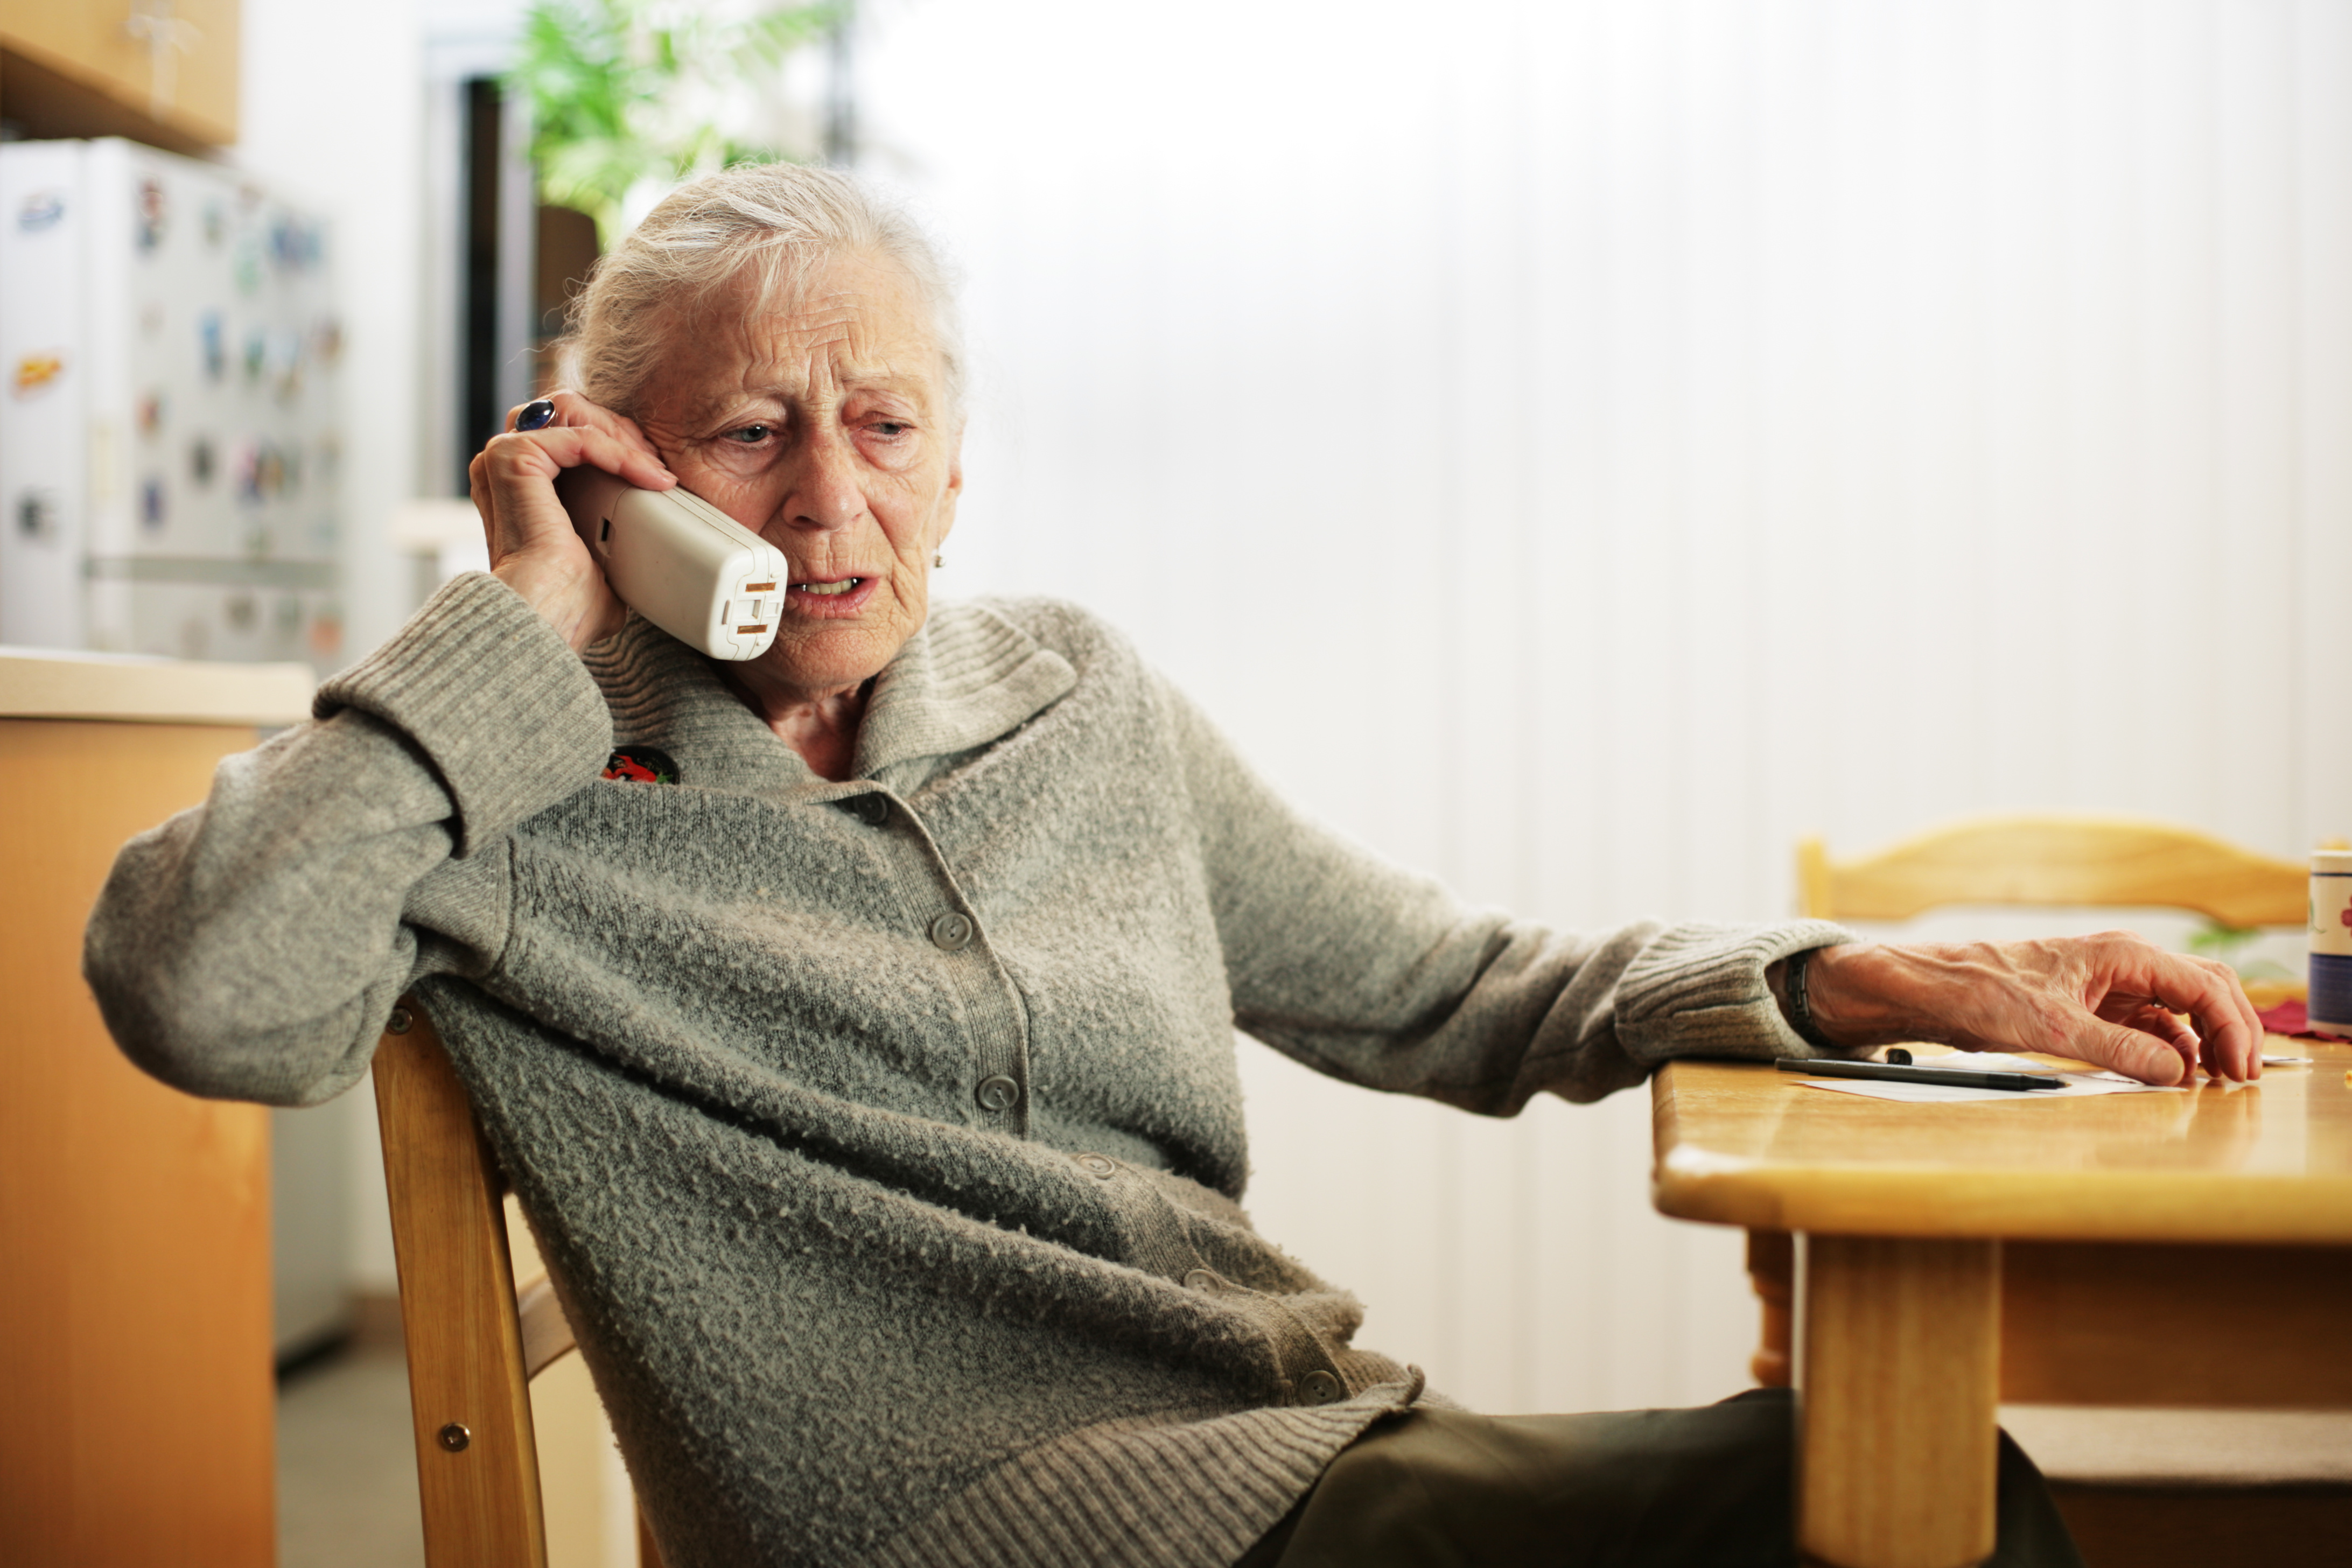 Вопросы пенсионеров. Пожилая женщина с телефоном. Пенсионер с телефоном в руке. Телефон для пожилых. Пожилая женщина с телефоном в руках.